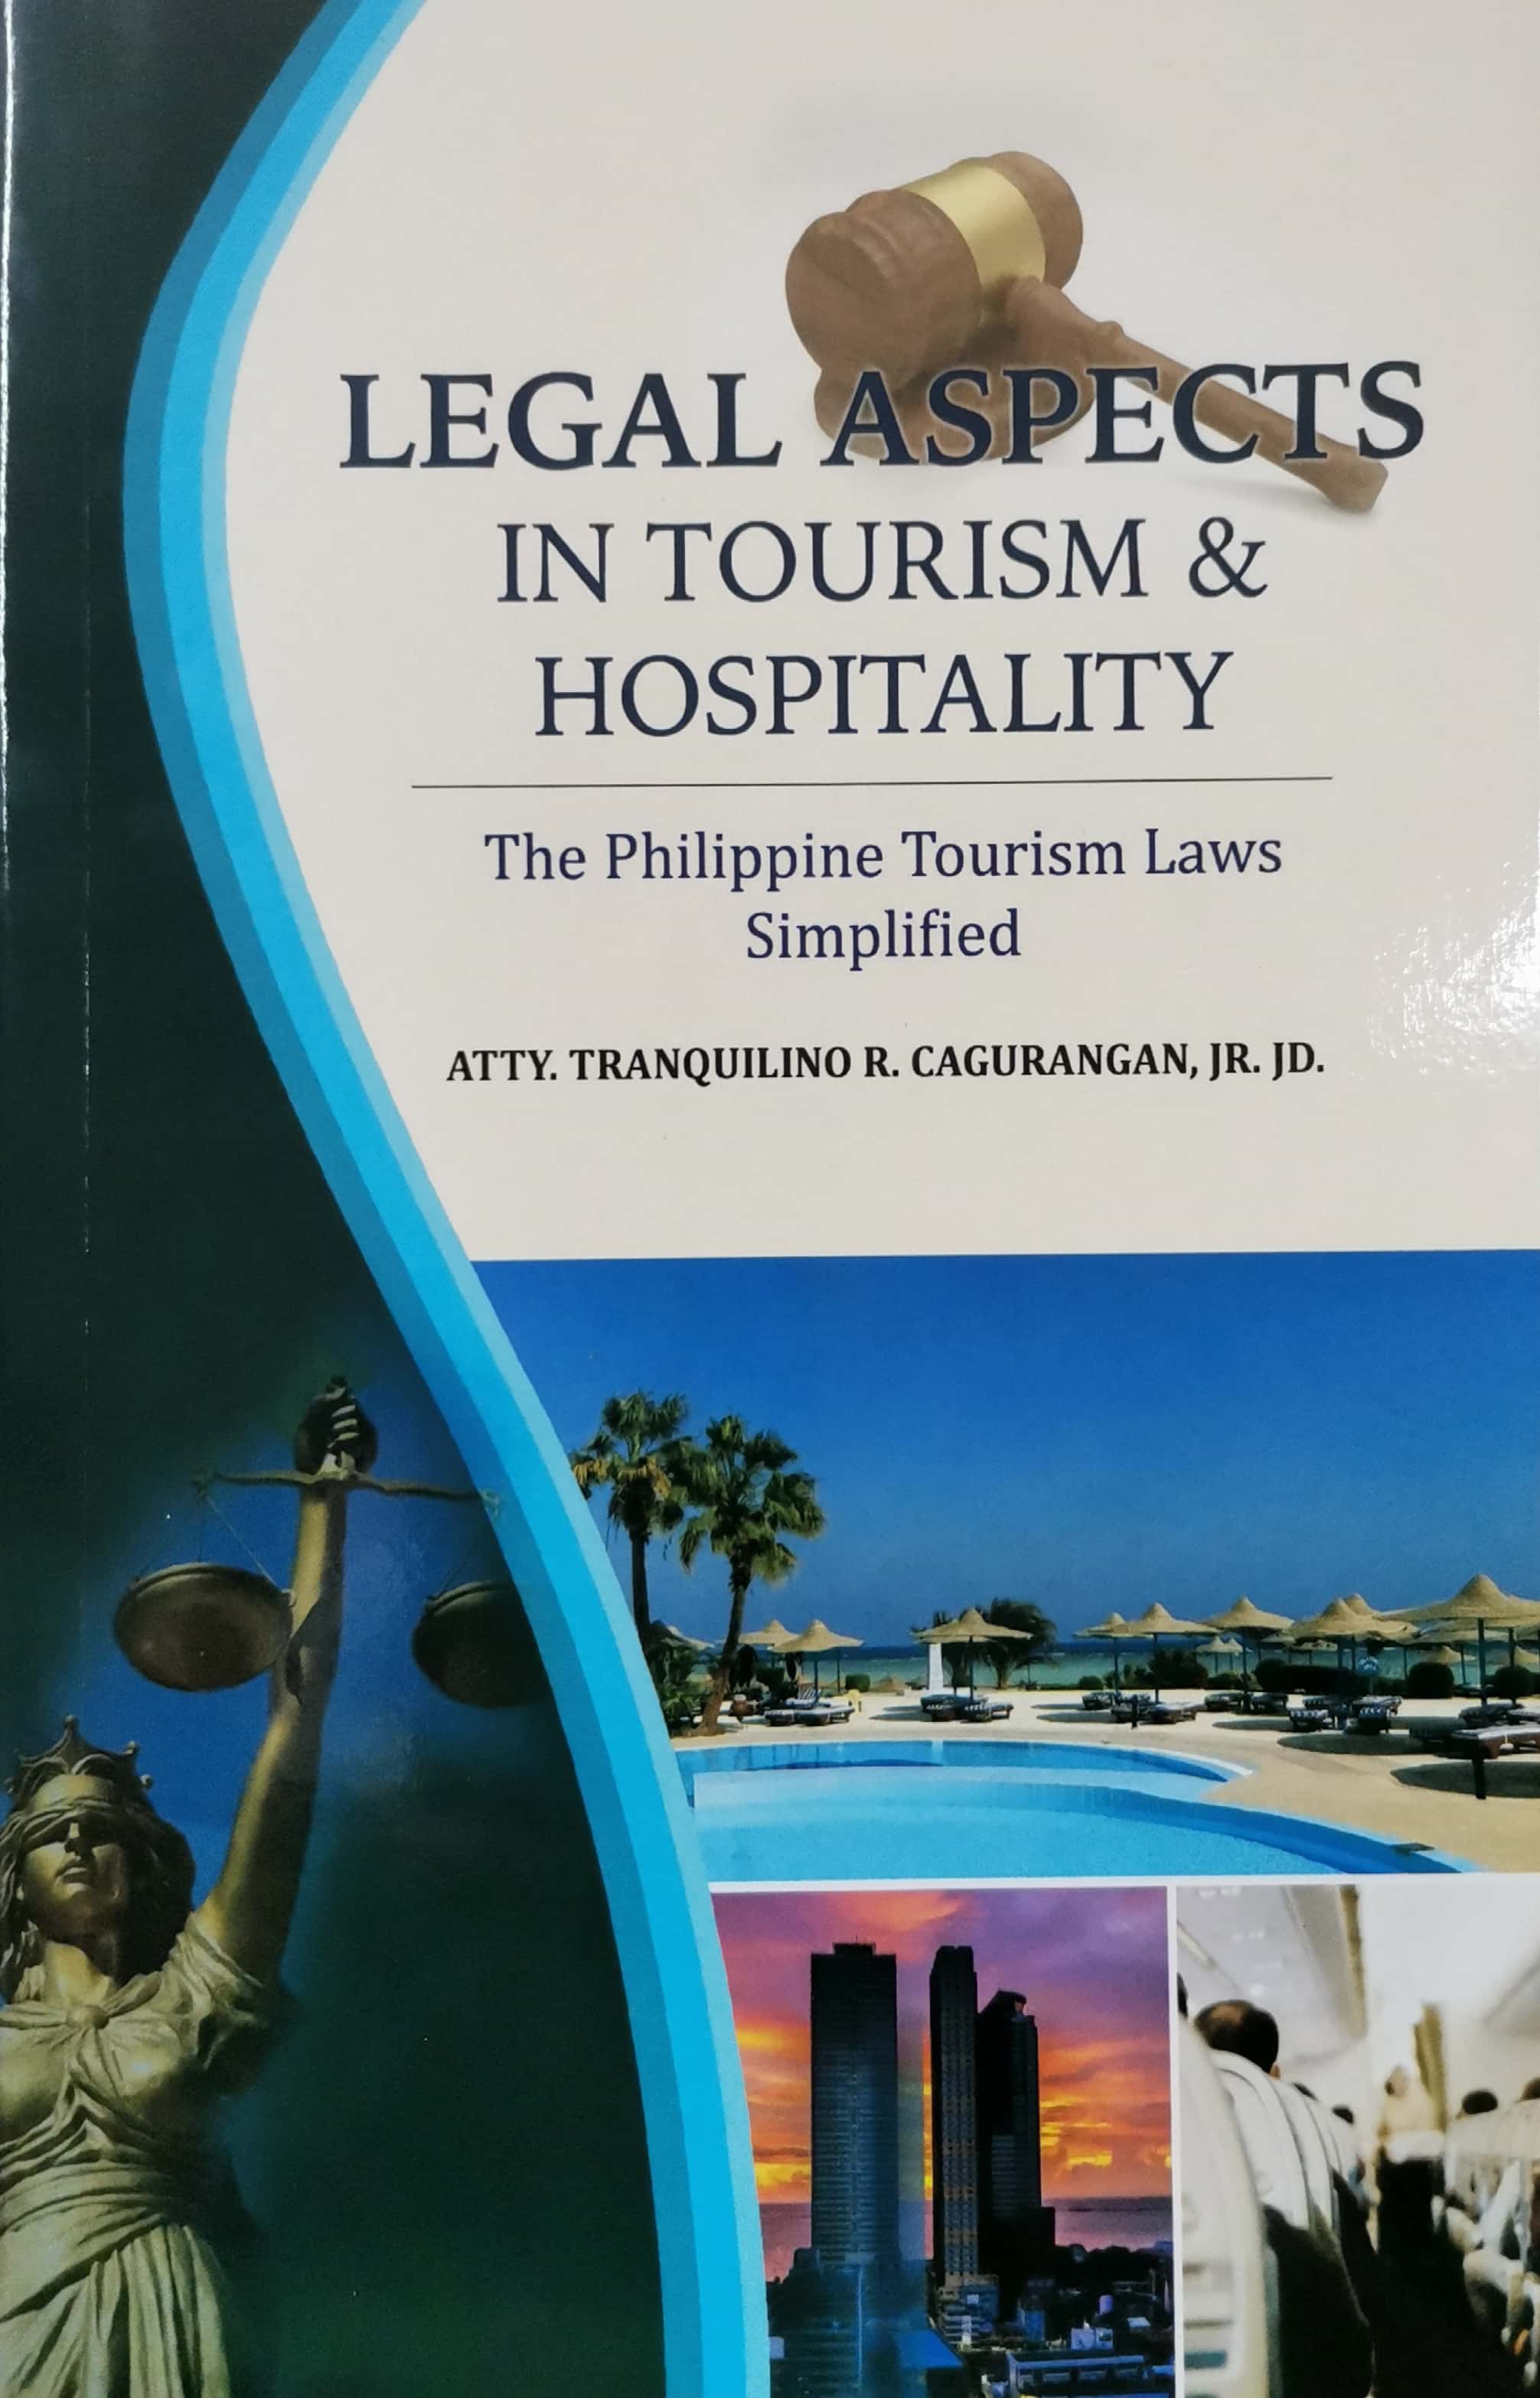 tourism legal definition